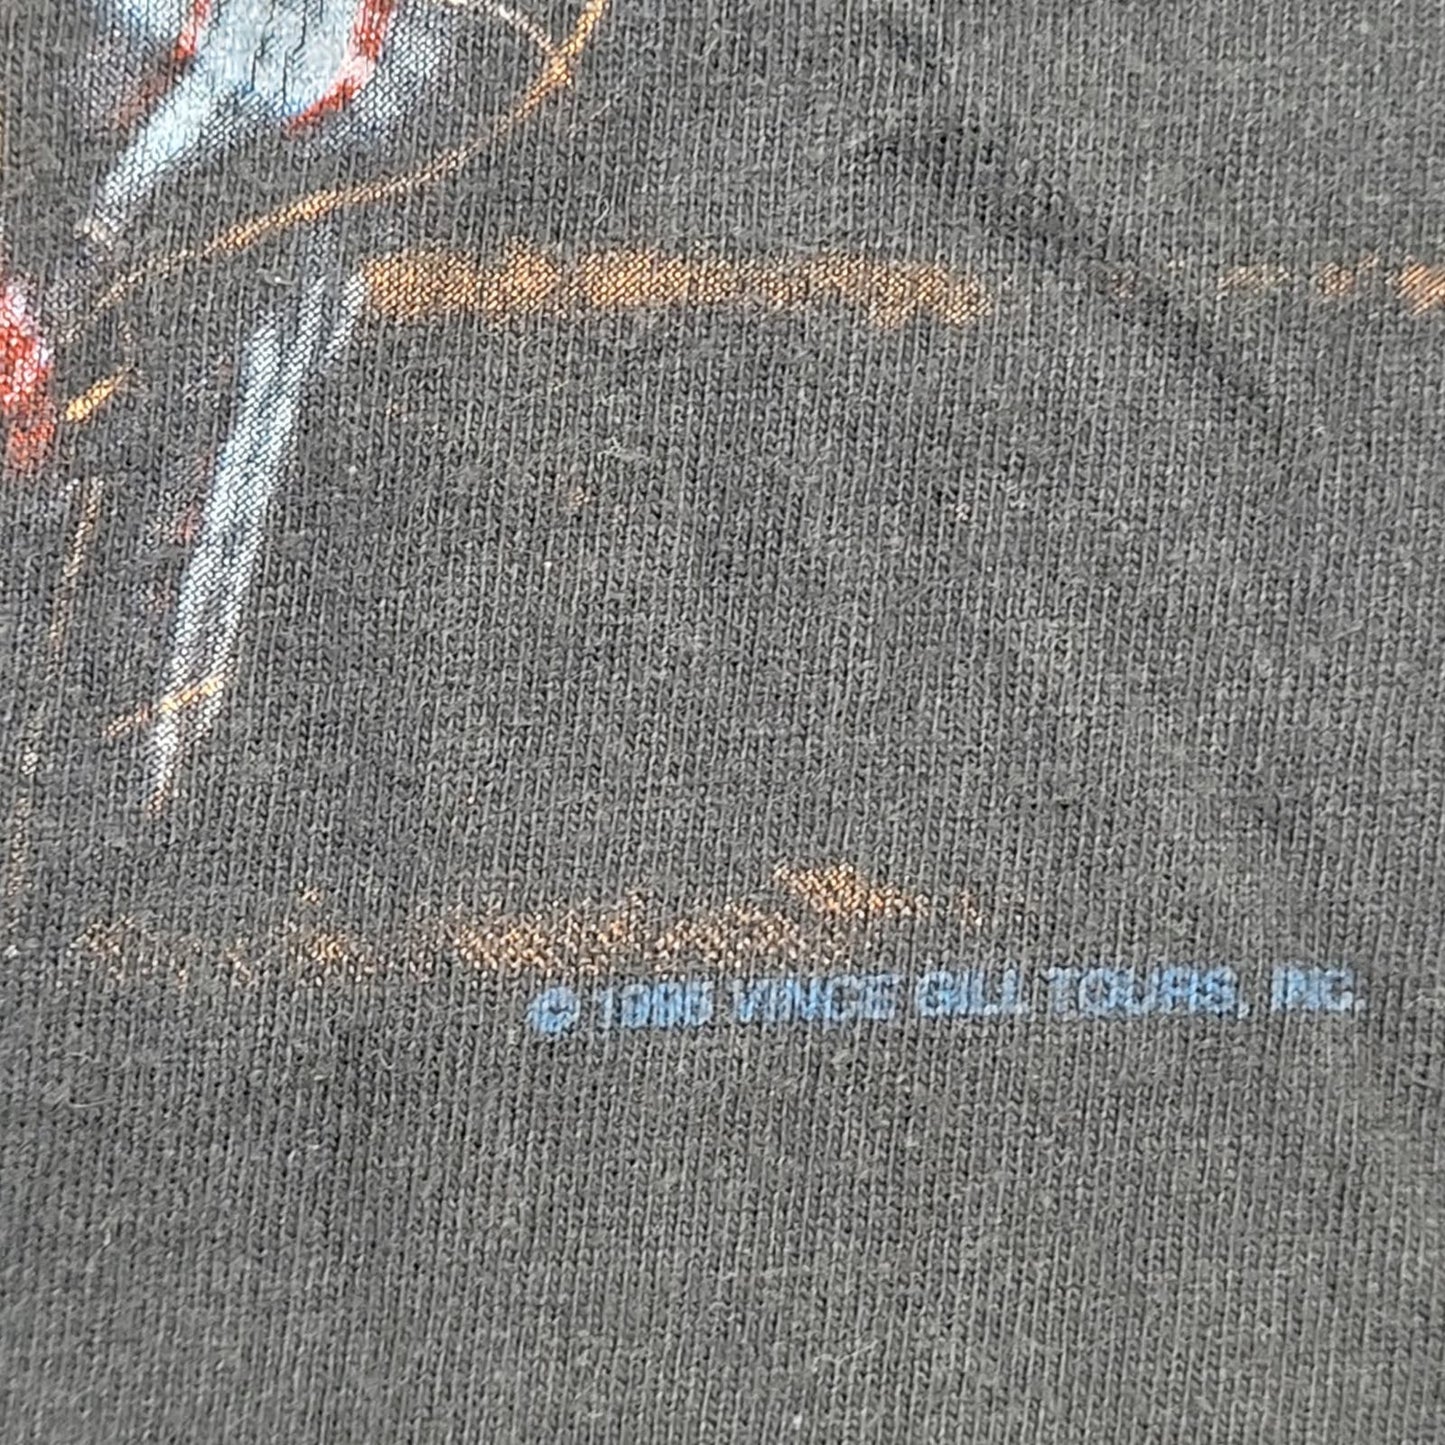 1995 Vince Gill Tour Shirt L